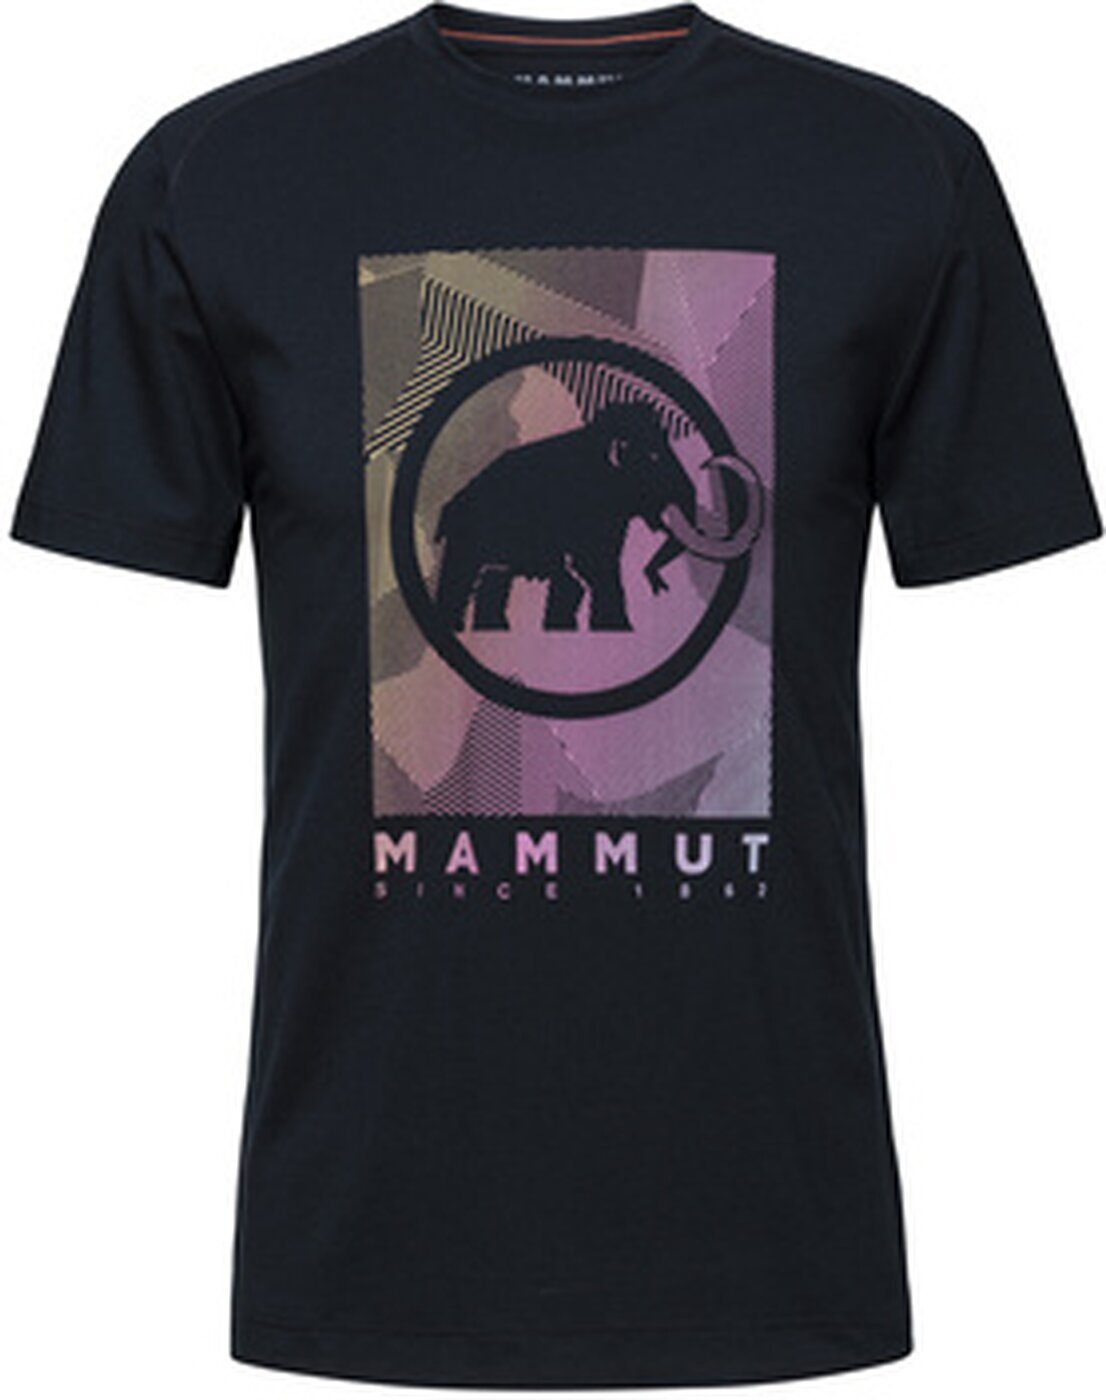 PRT2 T-Shirt Mammut Herren black Trovat Mammut Shirt 00254